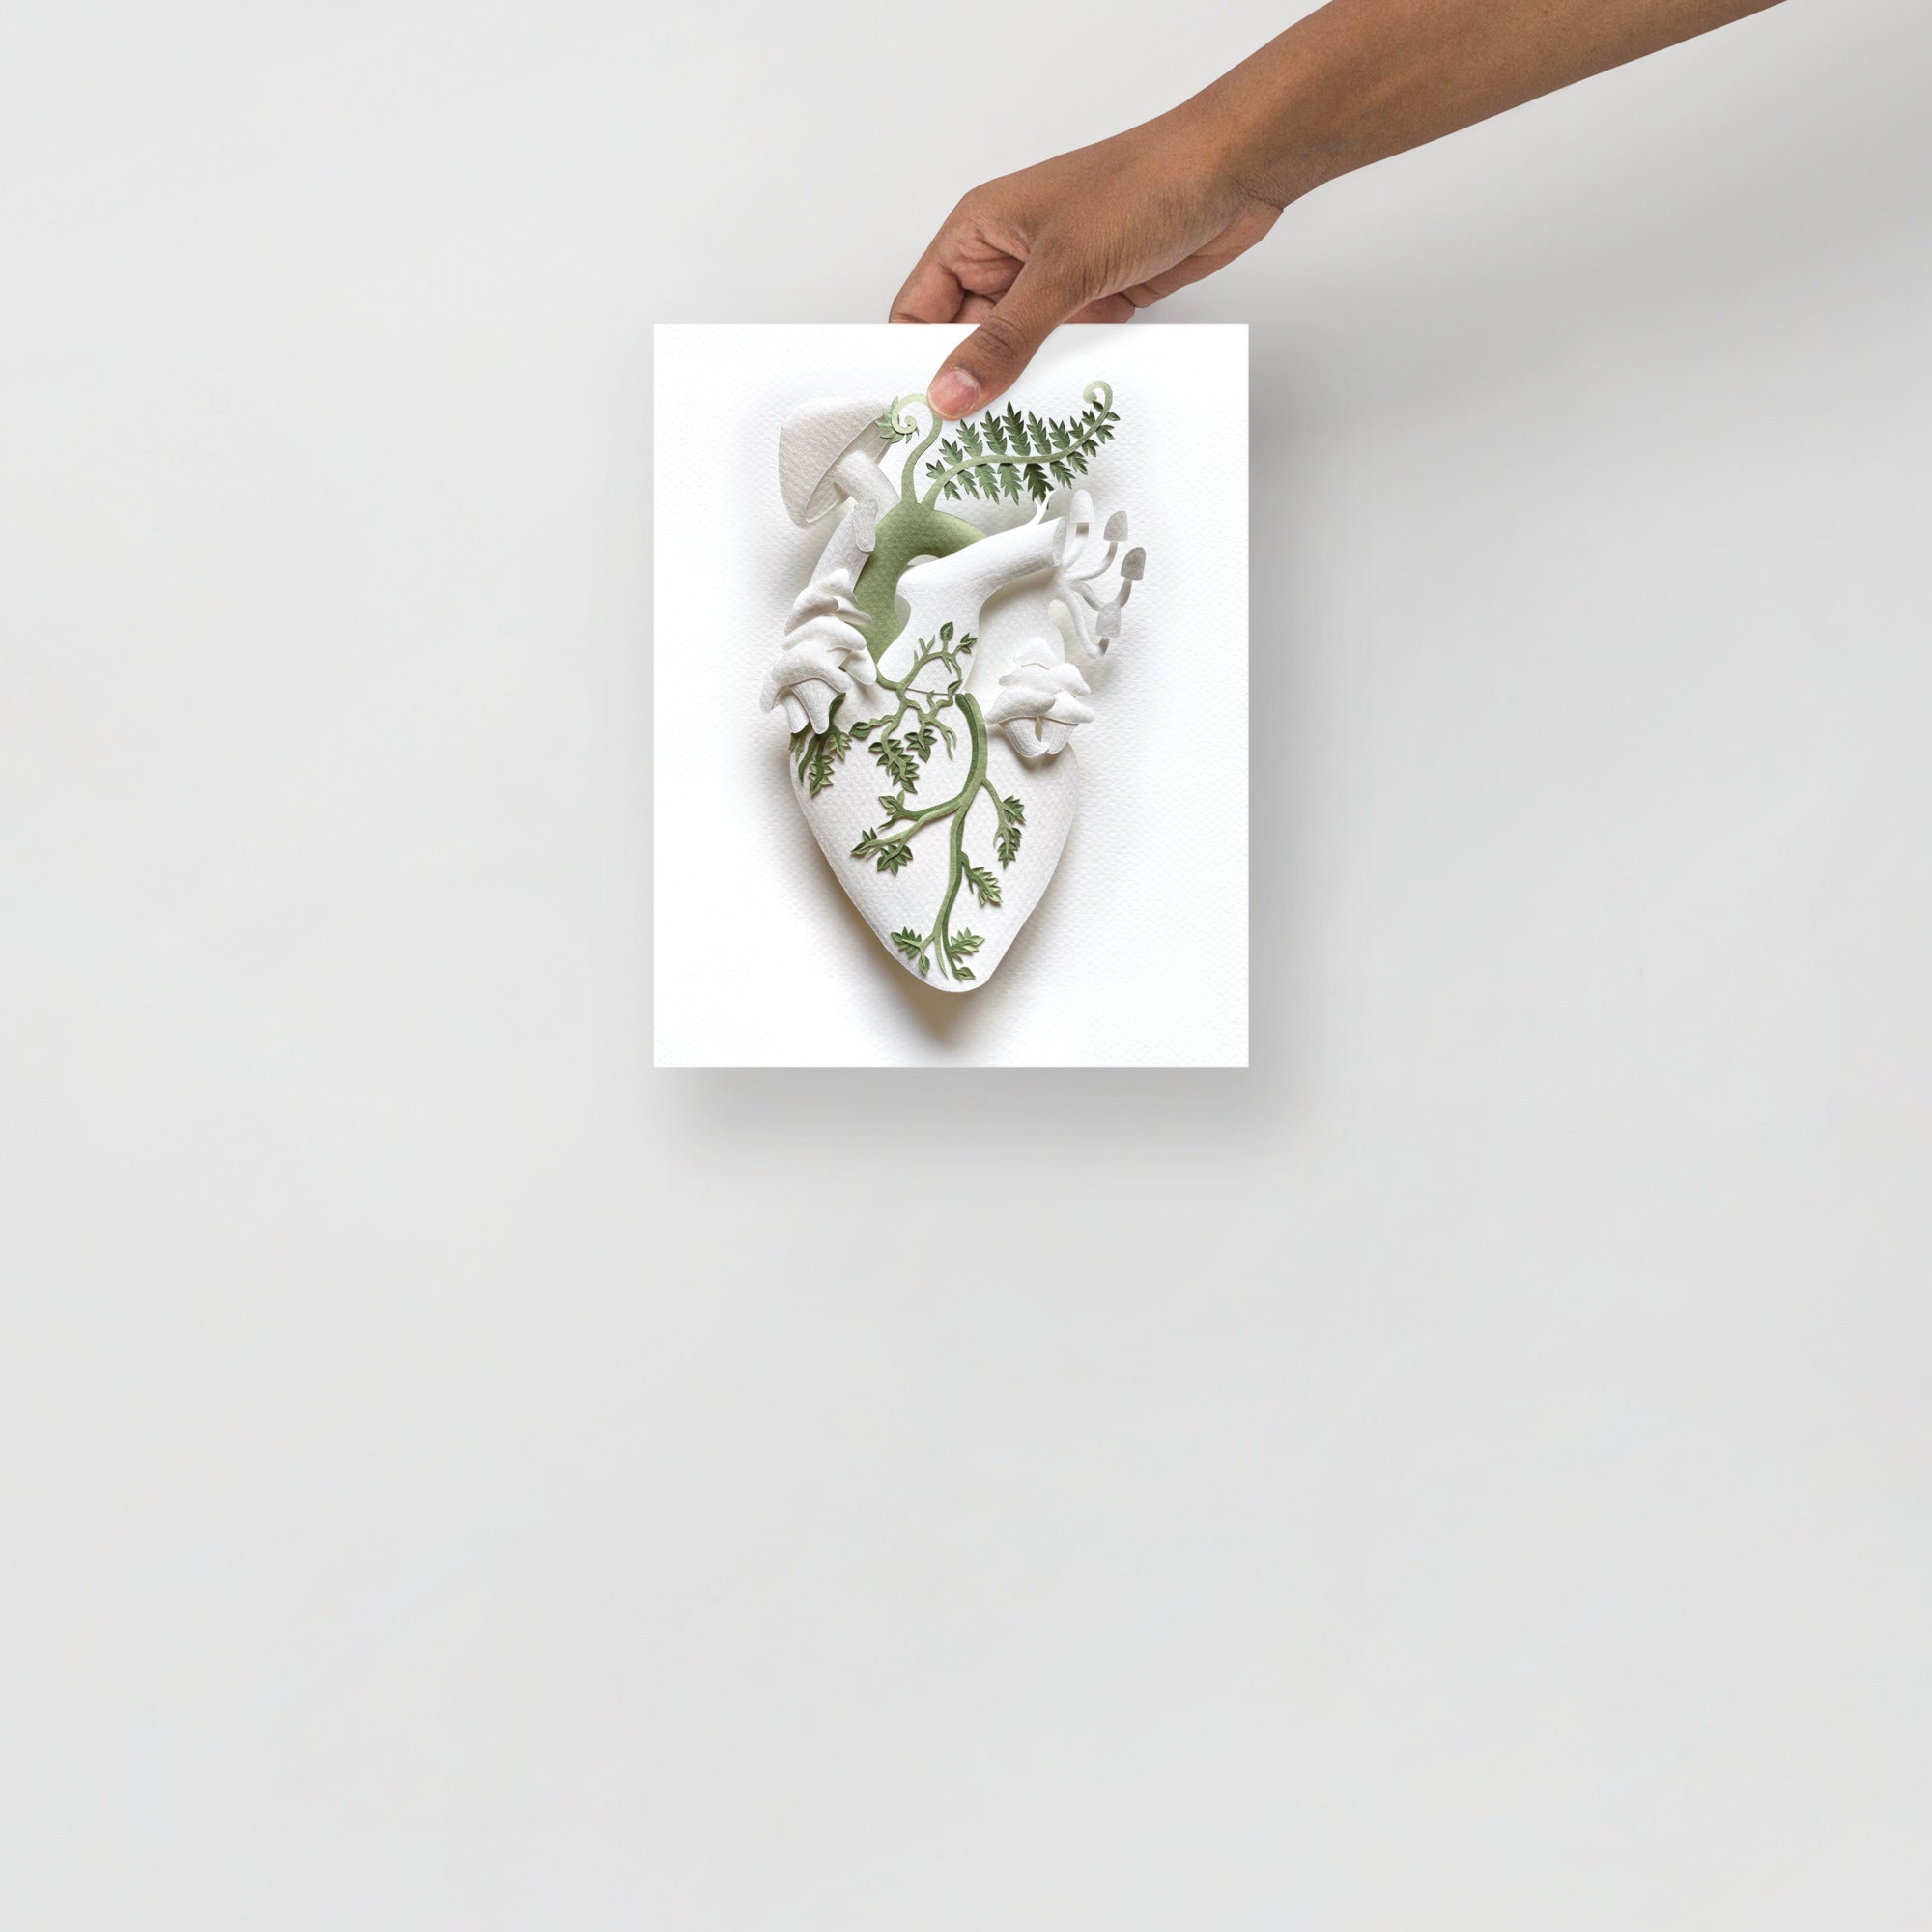 Healing Heart: Ferns 8" x 10" print